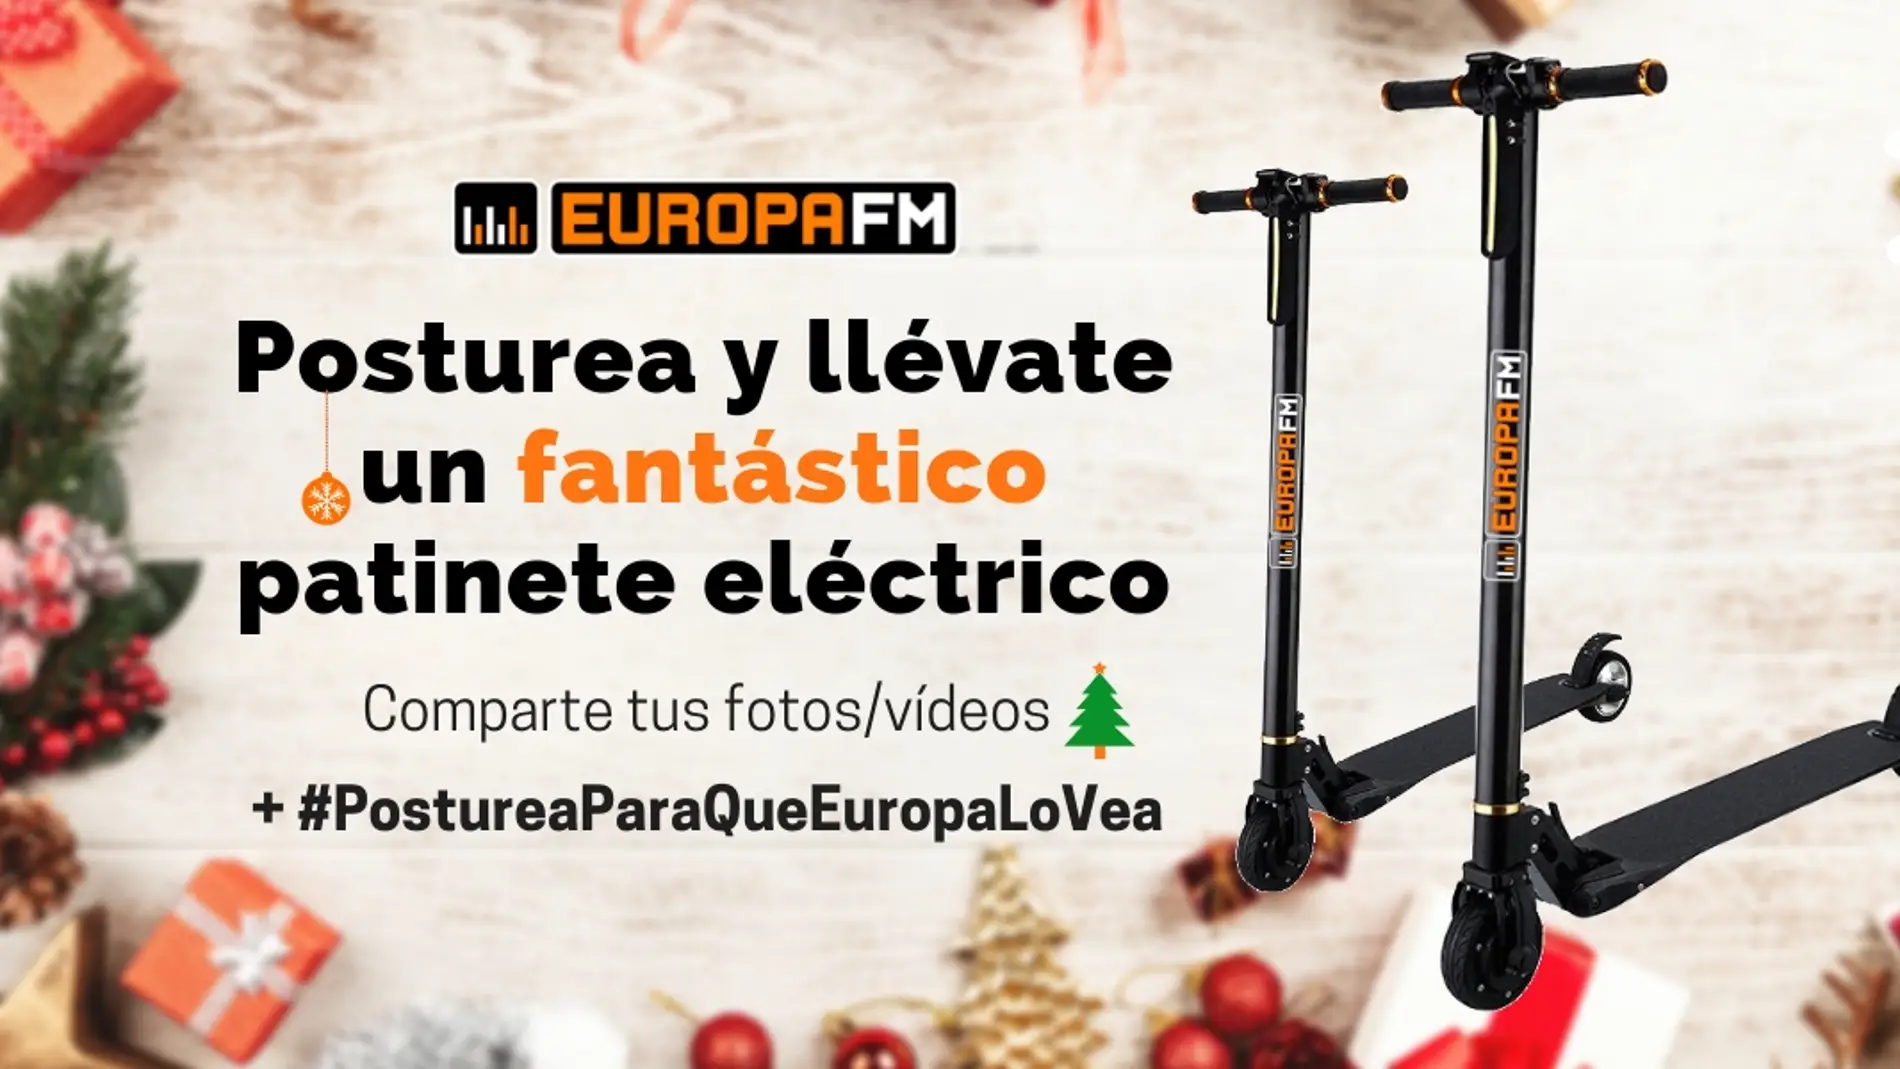 Concurso: Patinetes eléctricos de Europa FM title=